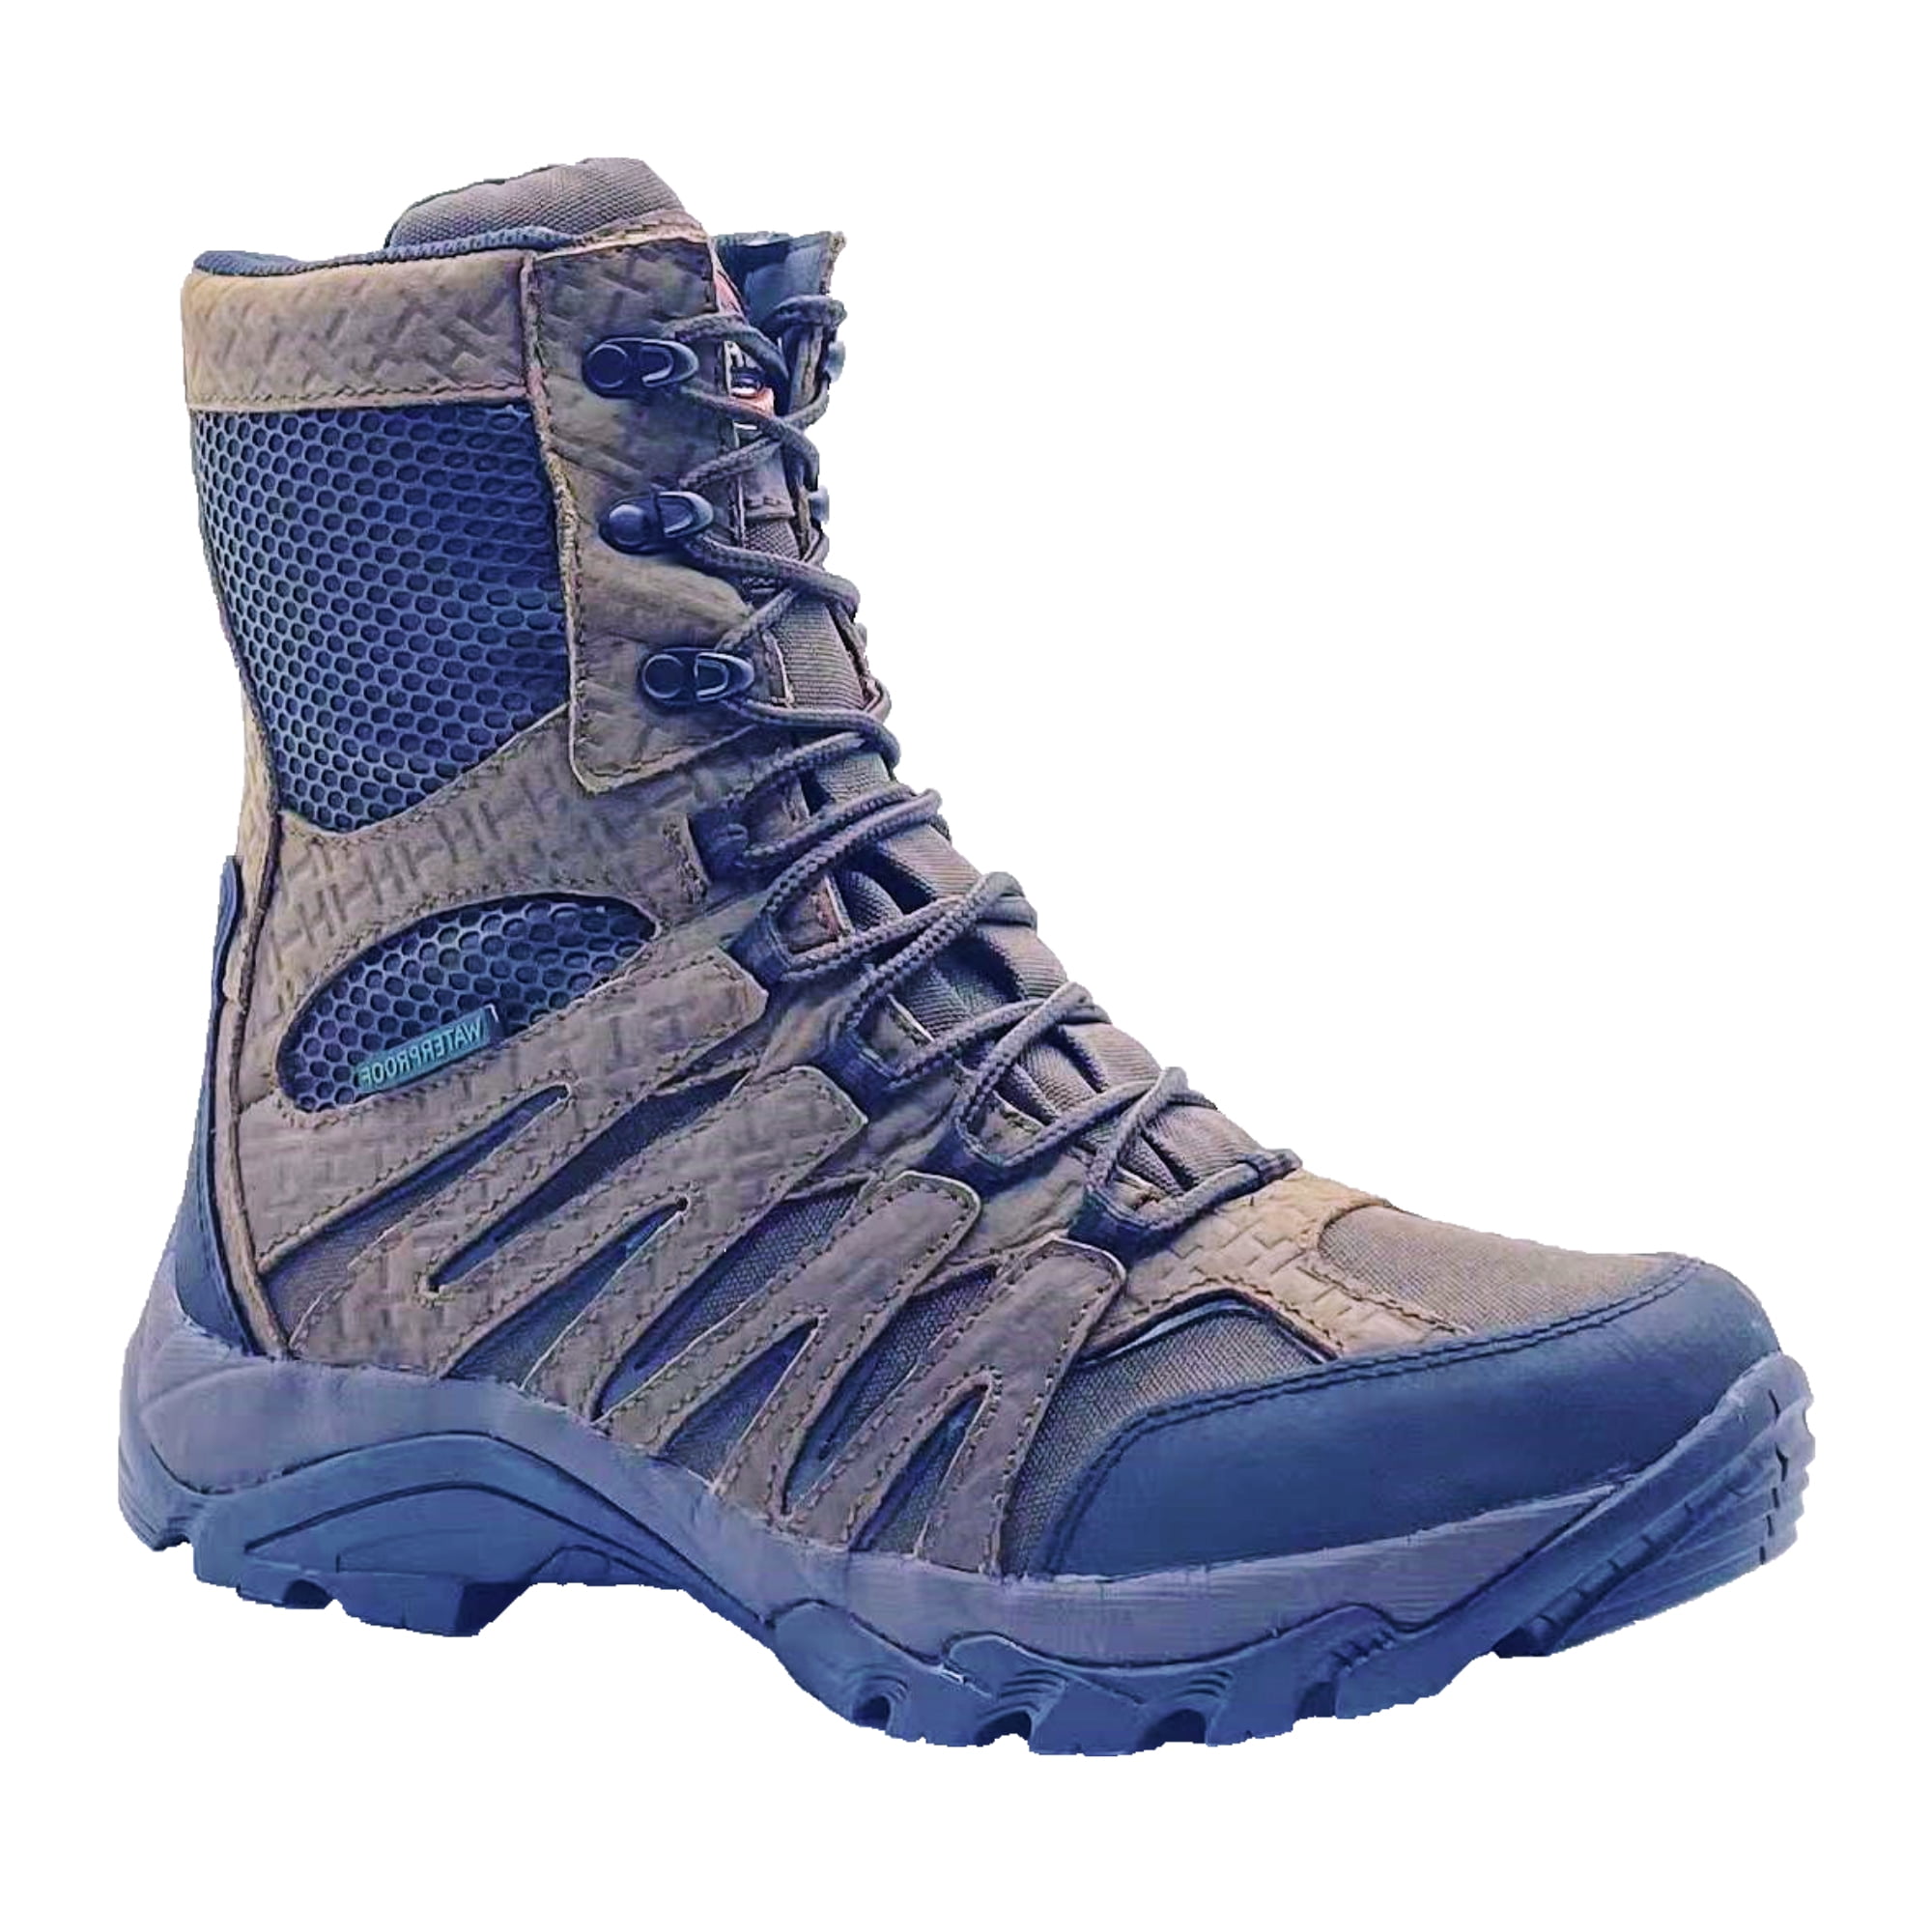 Waterproof Tactical Boots With Zipper | contabilidadecidada.com.br